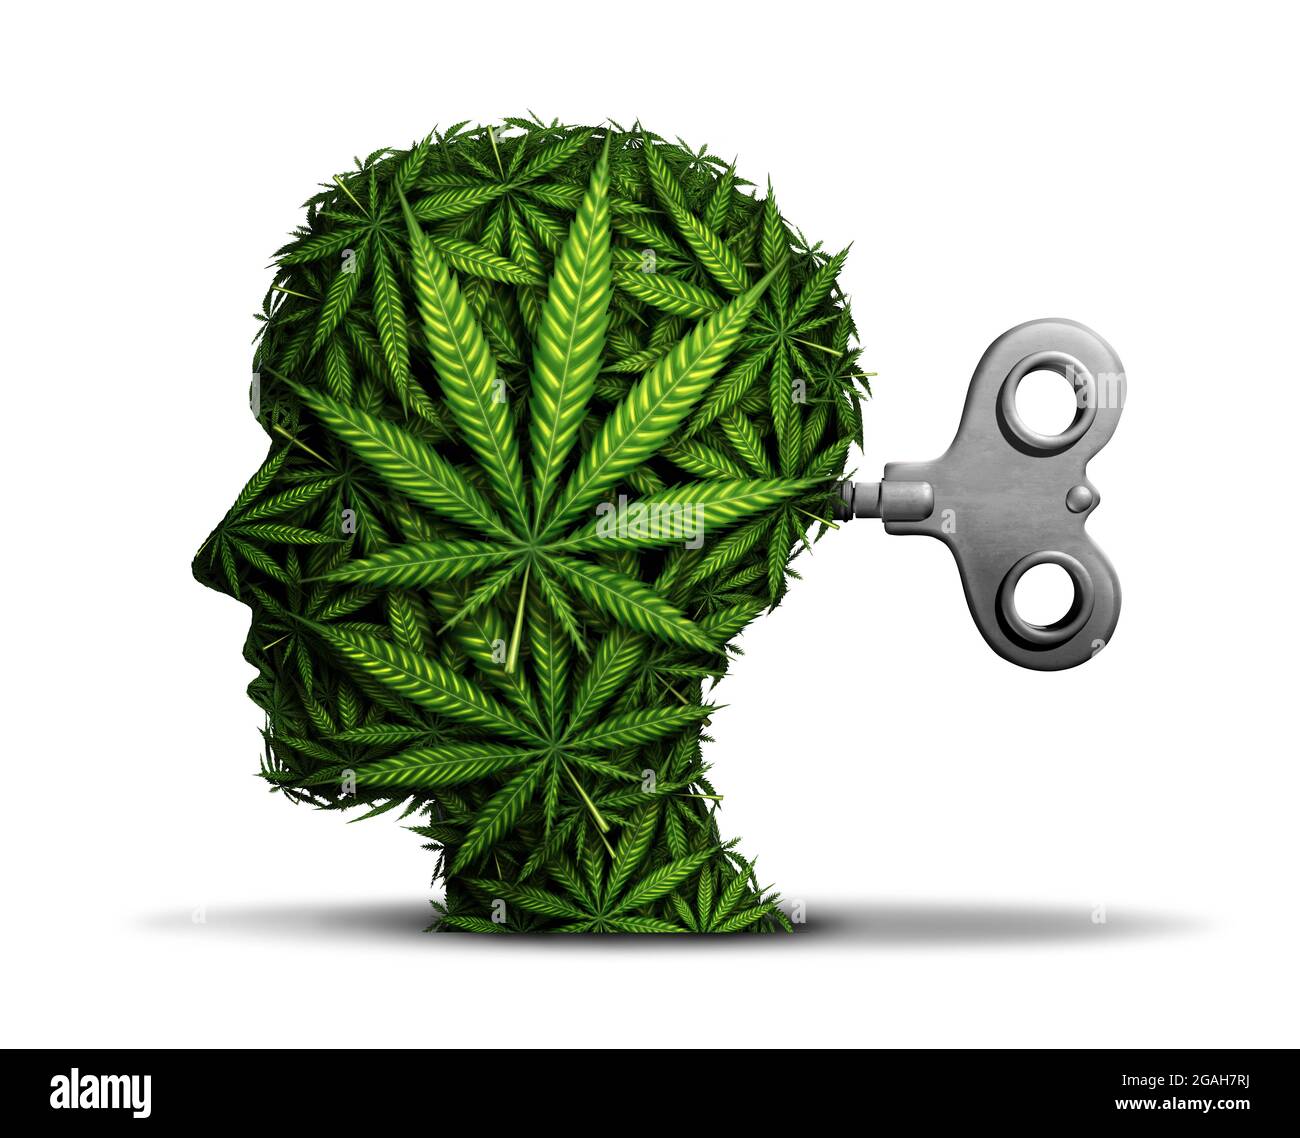 Marihuana-Geschäft und Cannabisindustrie oder geistige Funktion mit der Verwendung von Pot als psychiatrisches Konzept und die Auswirkungen auf das Gehirn. Stockfoto